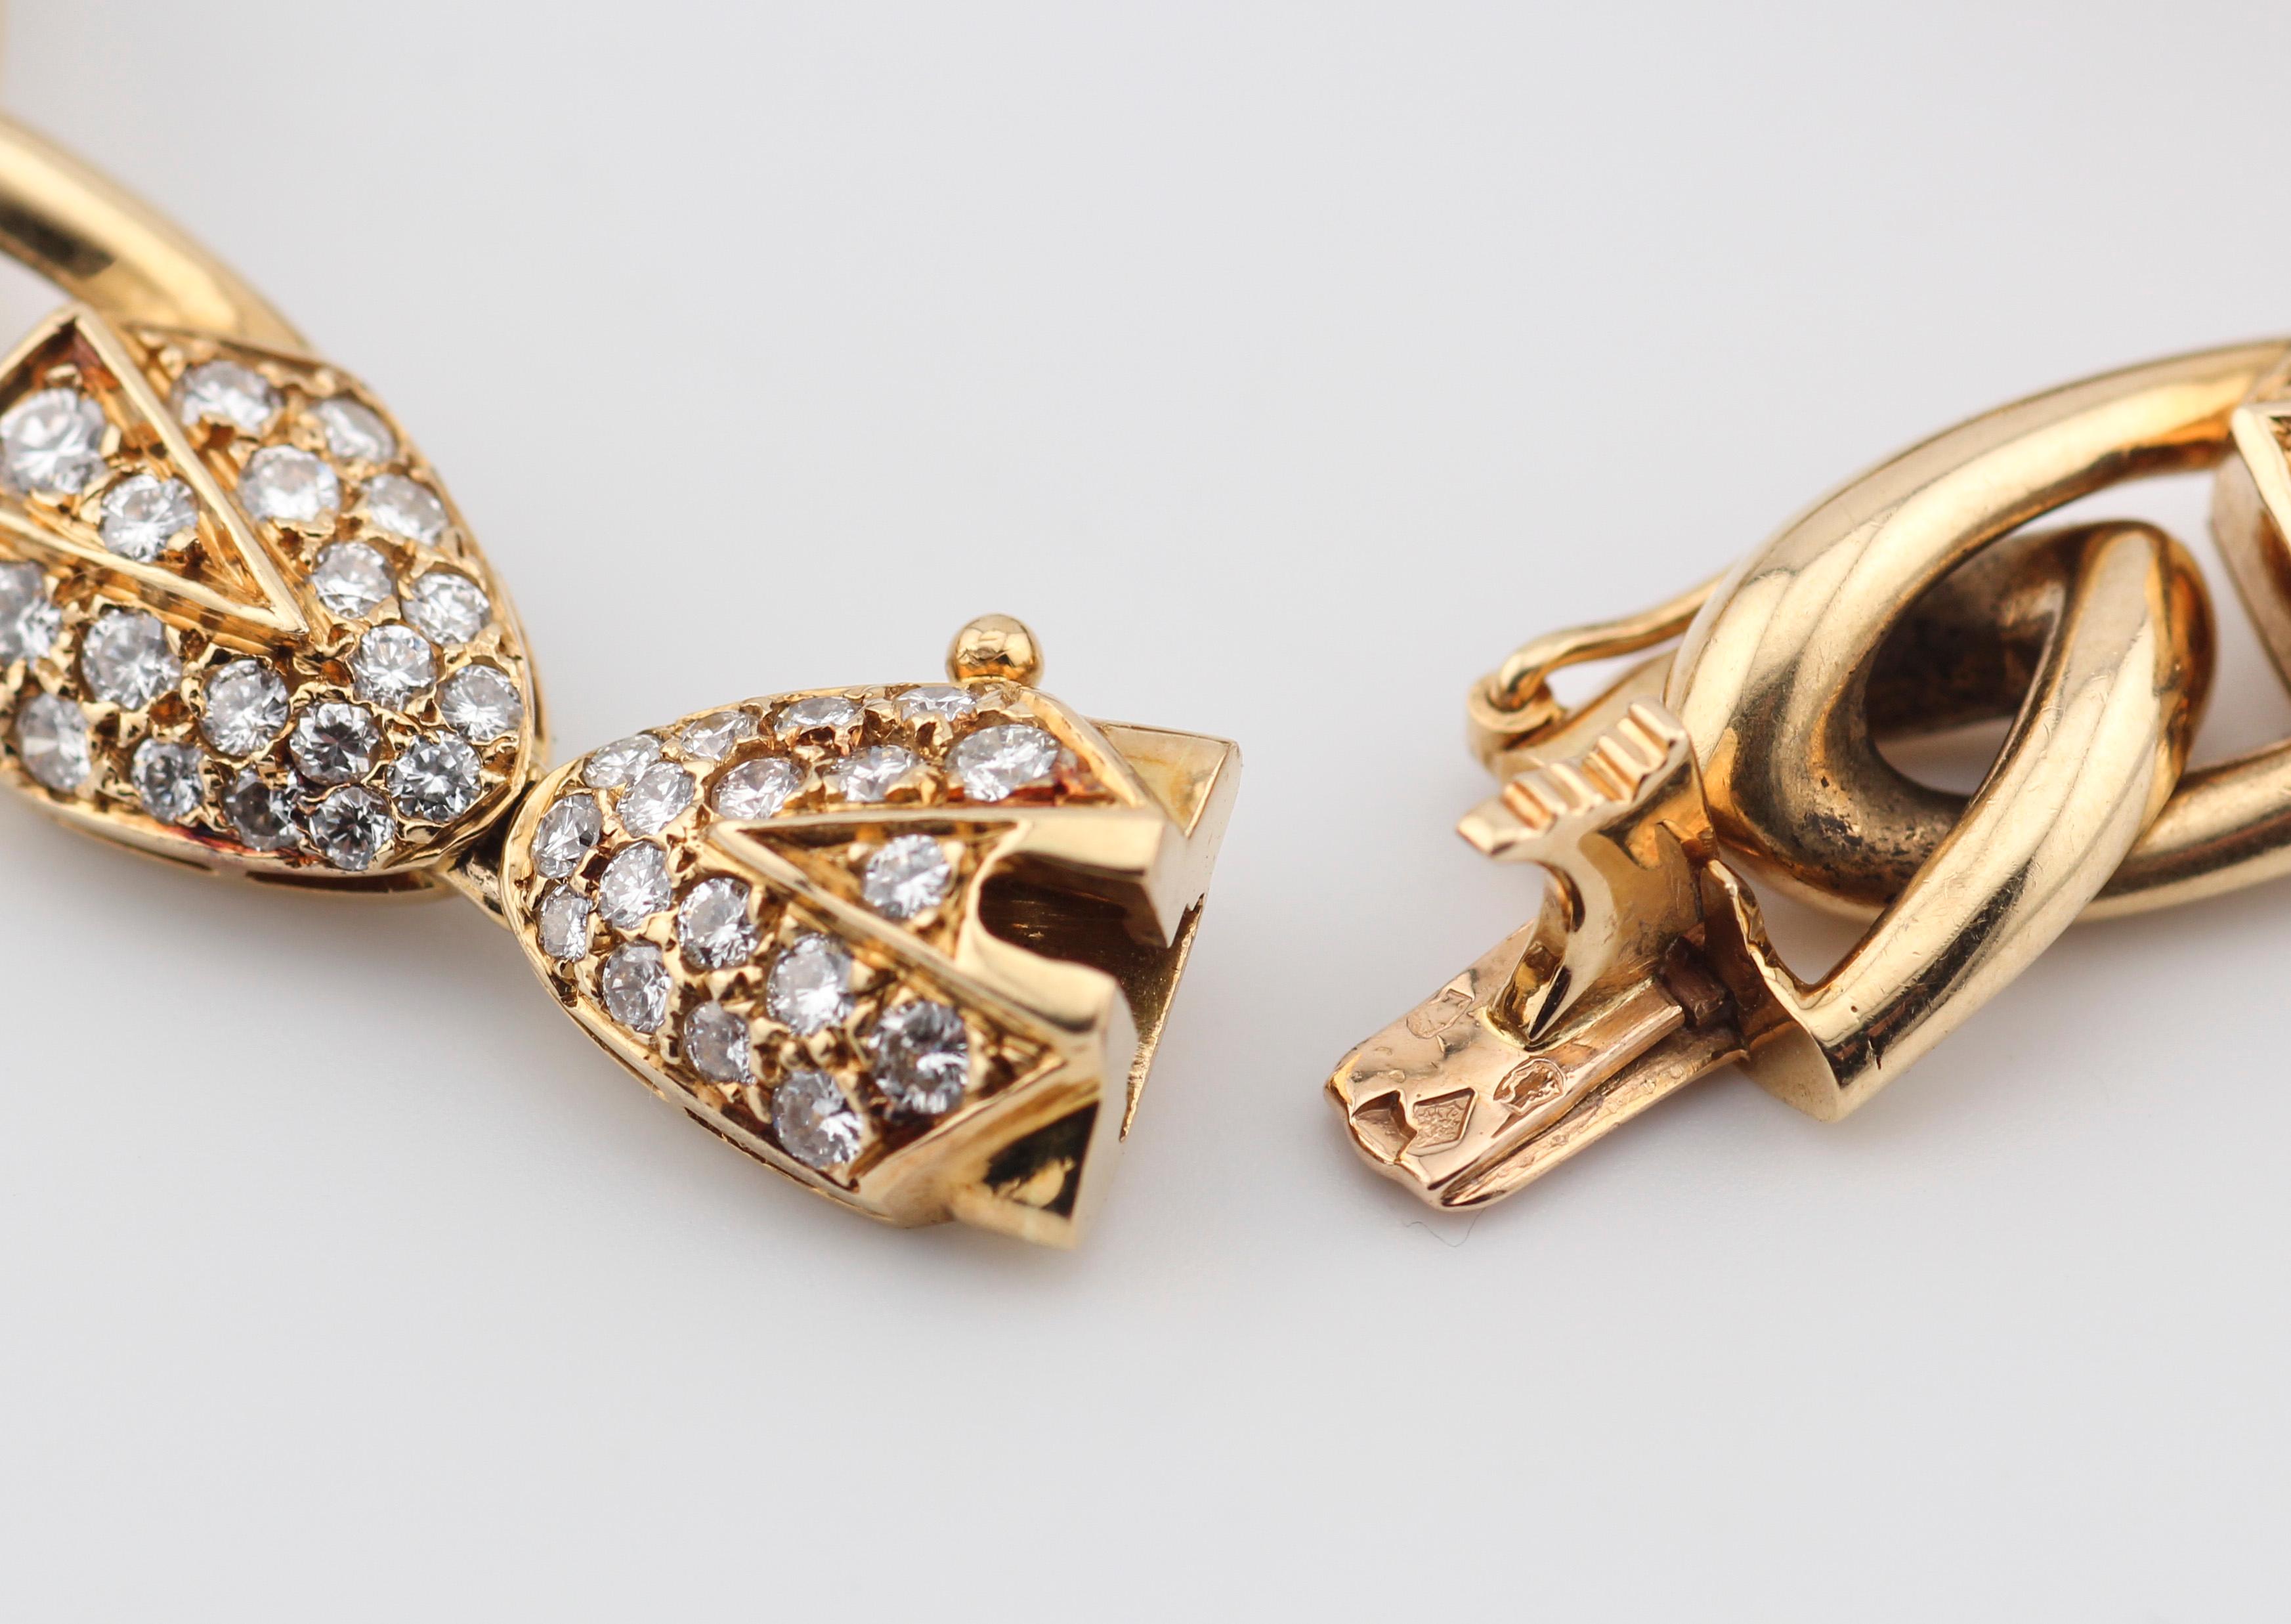 Piaget Brilliant Cut Diamond 18k Yellow Gold Link Bracelet For Sale 6